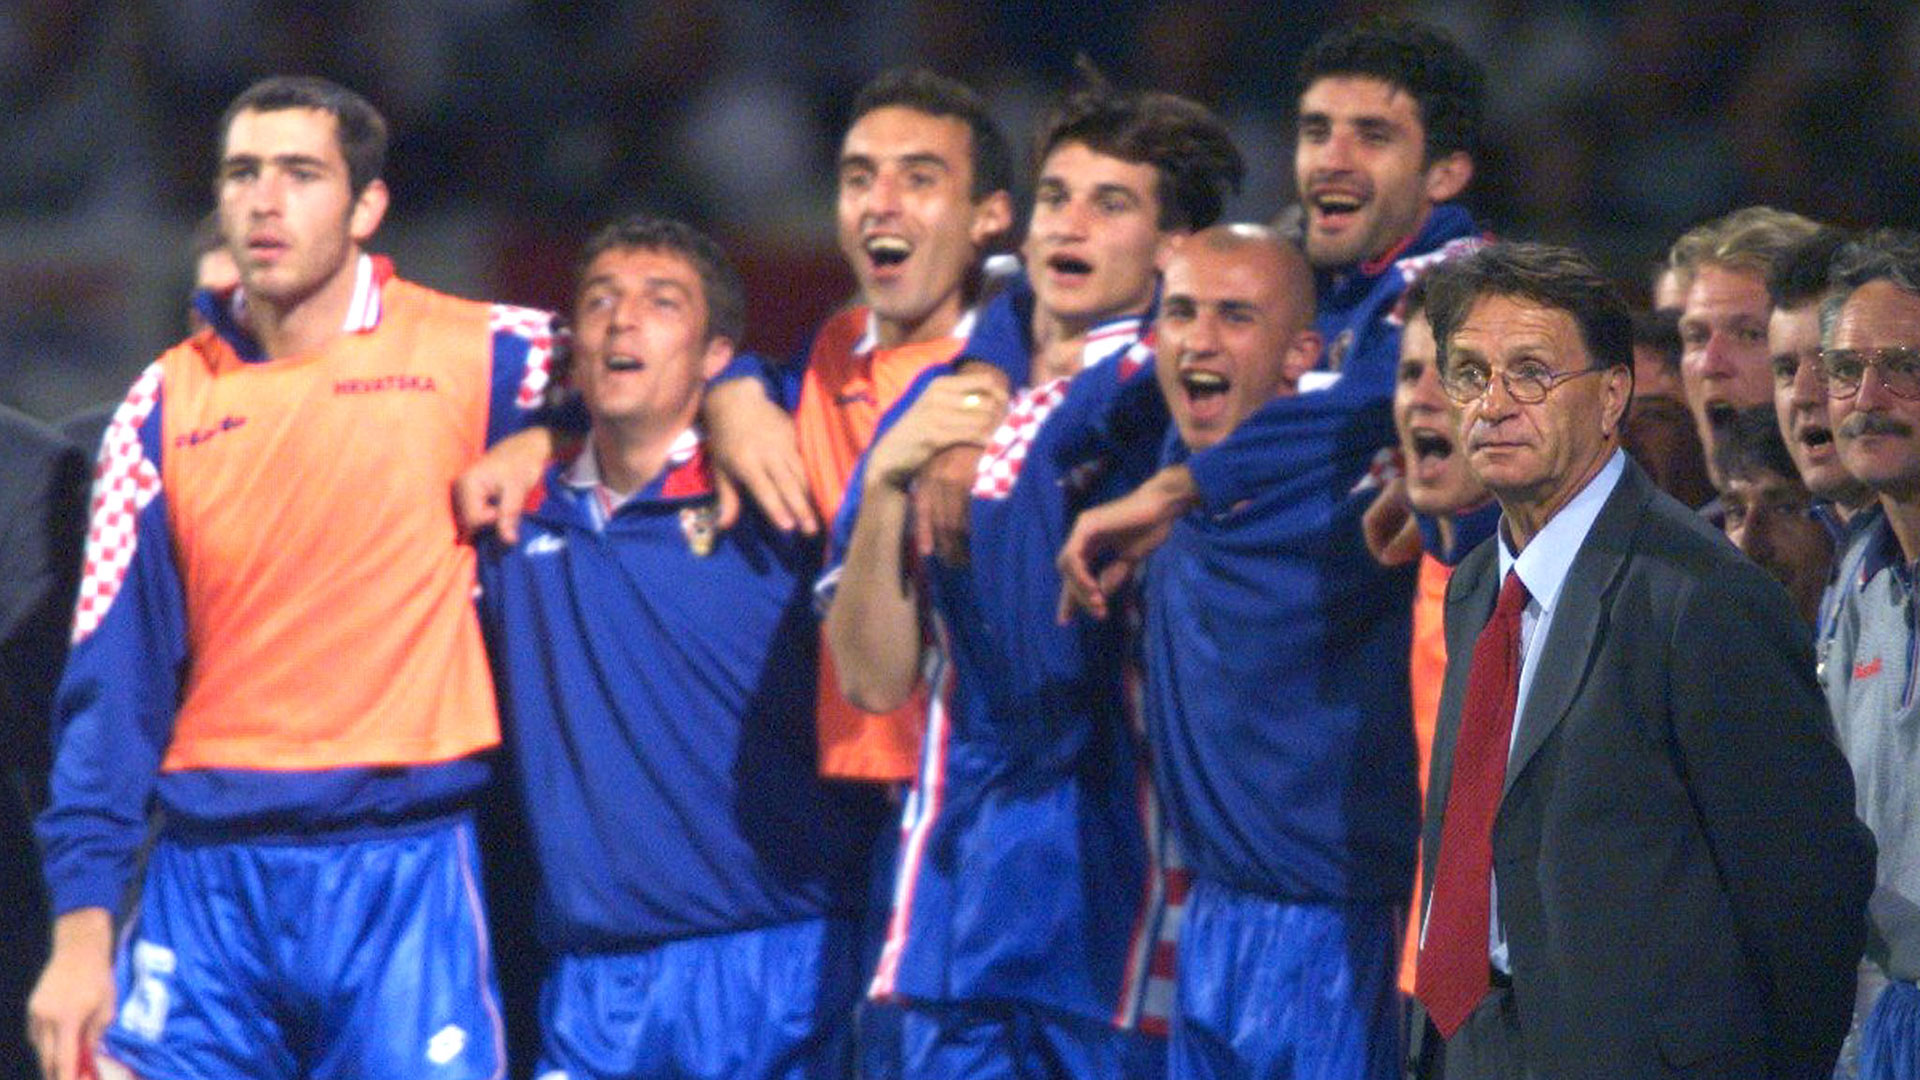 Blazevic llevó a Croacia a las semifinales de 1998 tras golear 3-0 a Alemania en cuartos (KC/KM)